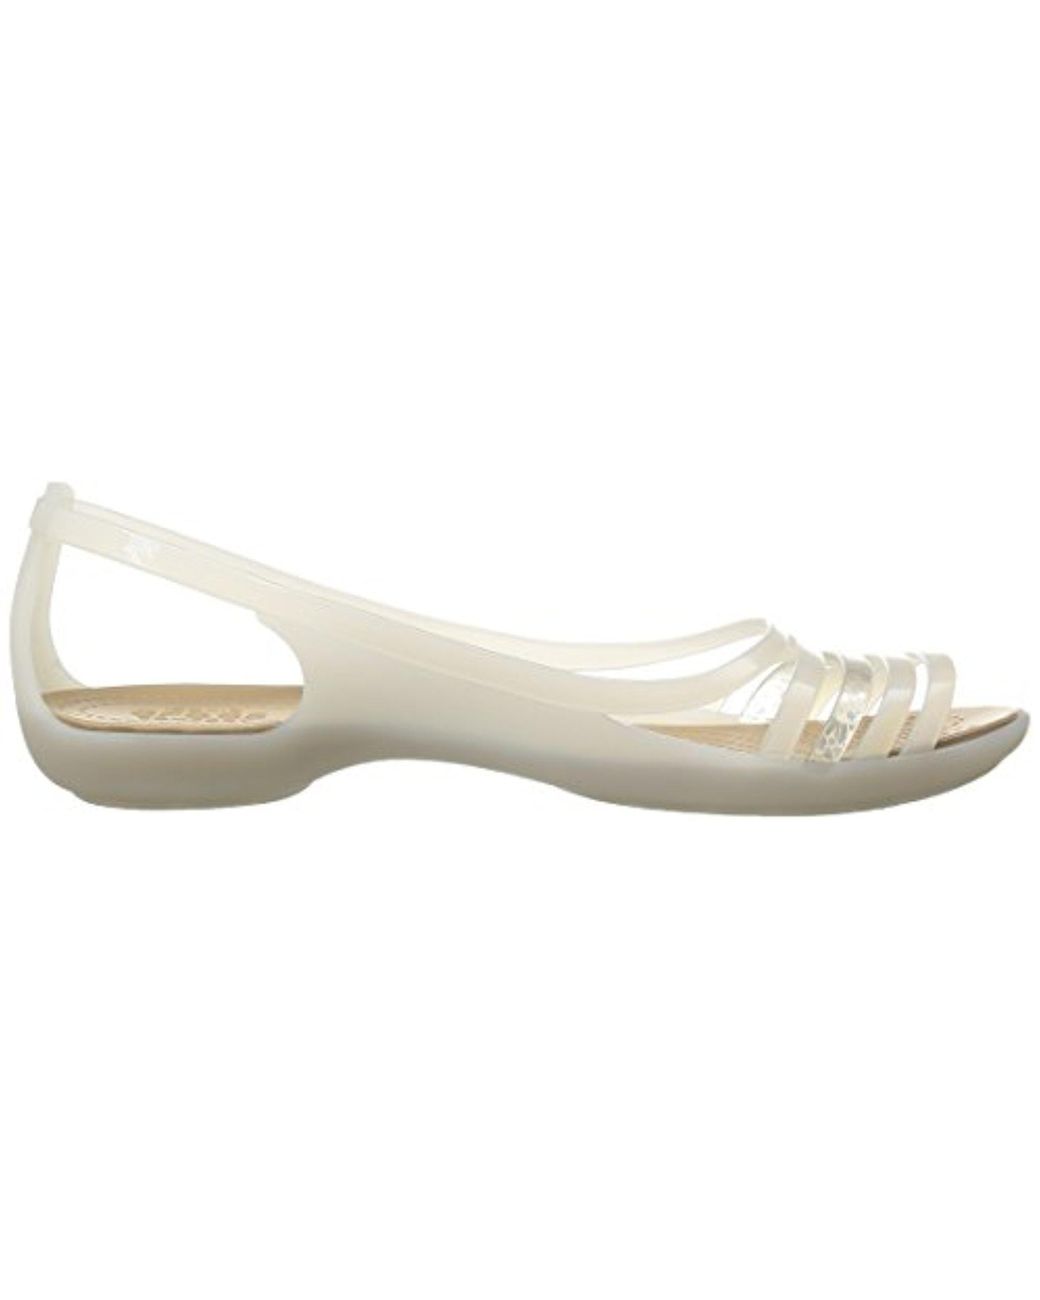 Crocs Womens Huarache Flat Open Toe Sandal Shoes